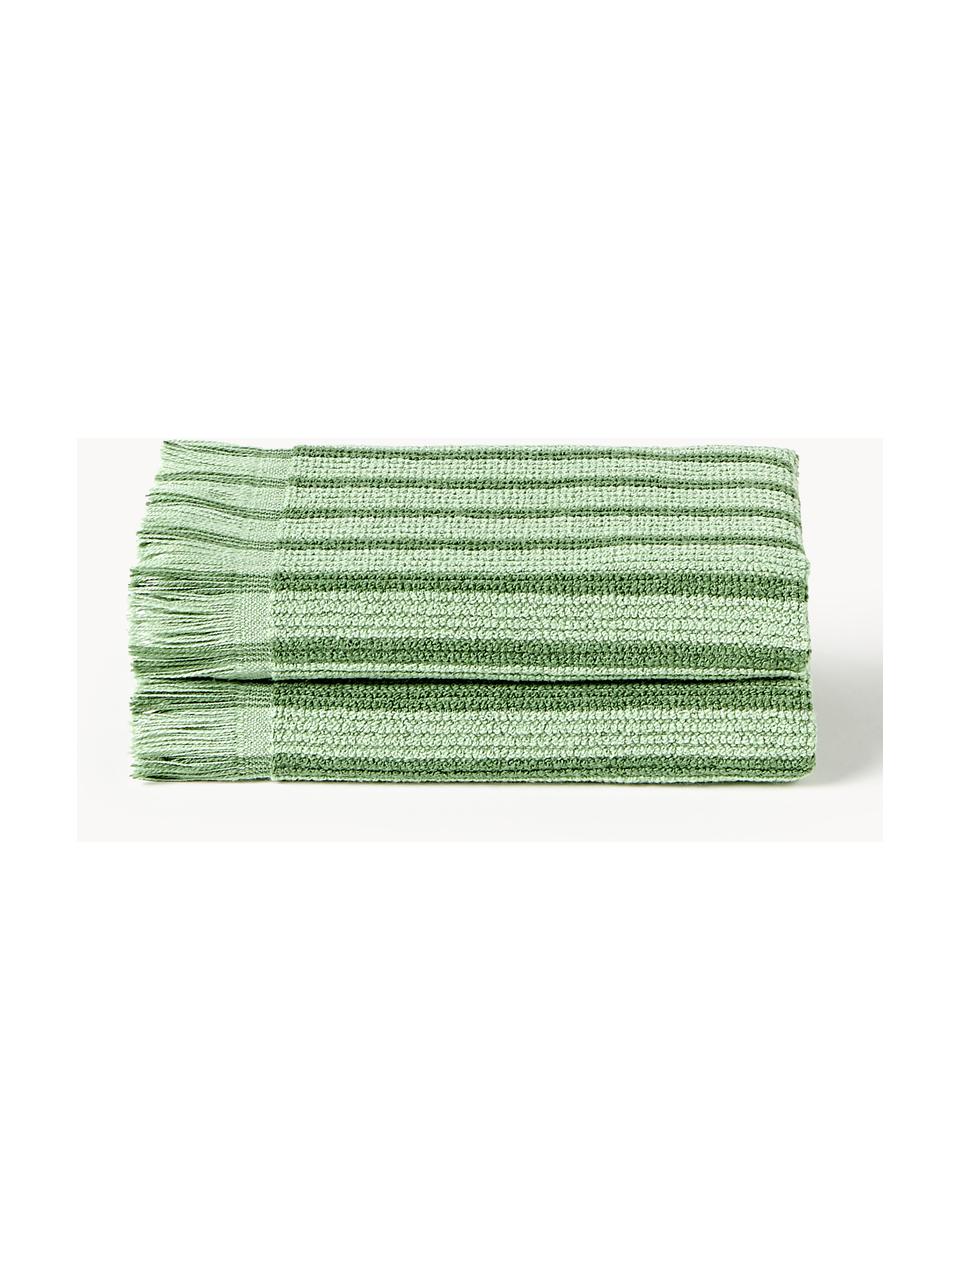 Ručník Irma, různé velikosti, Zelená, Ručník, Š 50 cm, D 100 cm, 2 ks